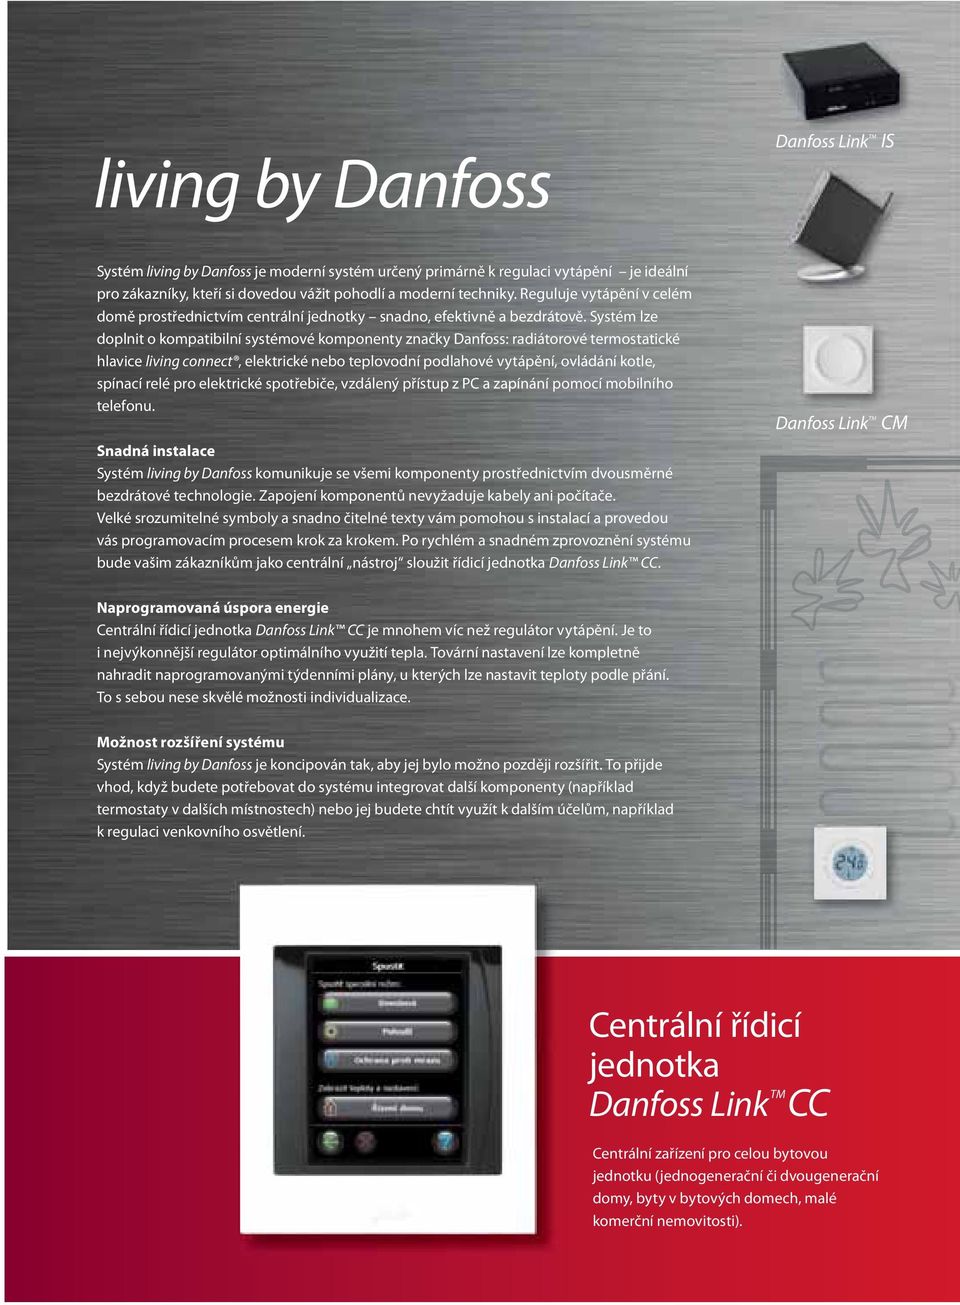 Systém lze doplnit o kompatibilní systémové komponenty značky Danfoss: radiátorové termostatické hlavice living connect, elektrické nebo teplovodní podlahové vytápění, ovládání kotle, spínací relé